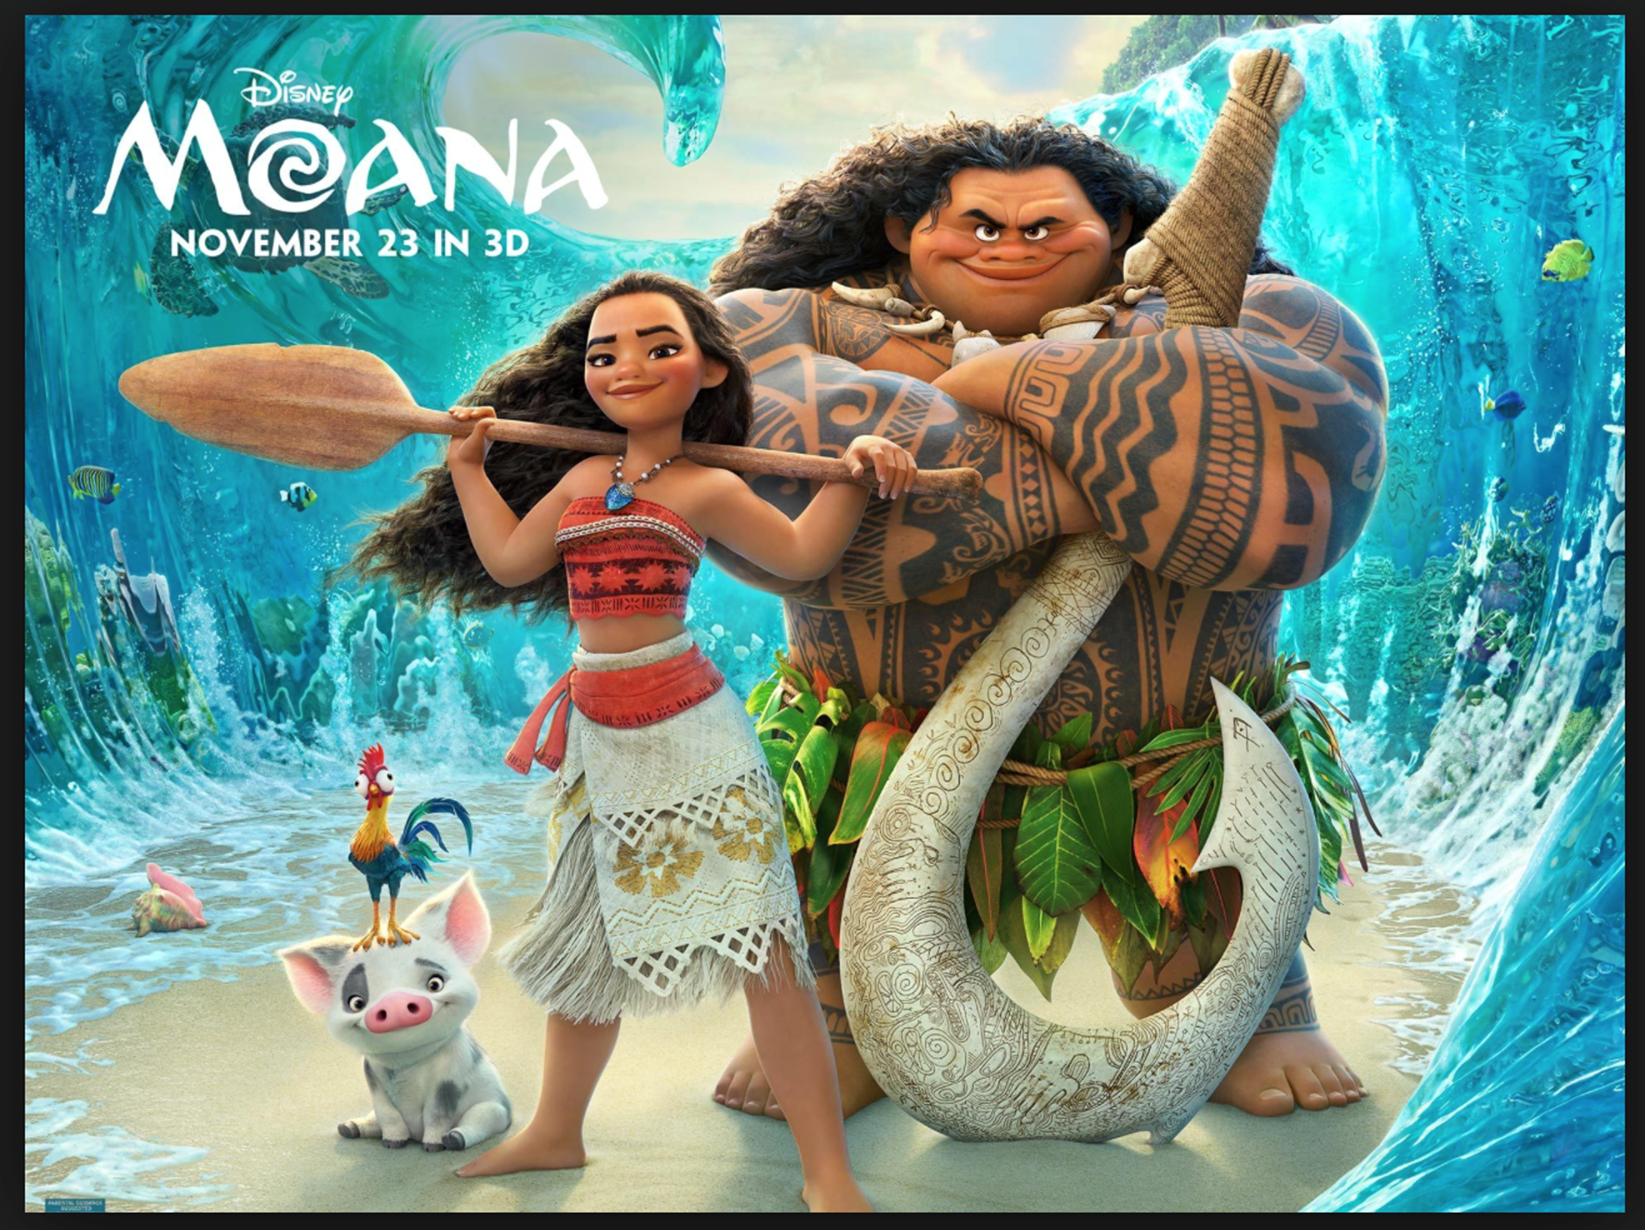 Moana y Maui, los personajes principales del film de Disney.